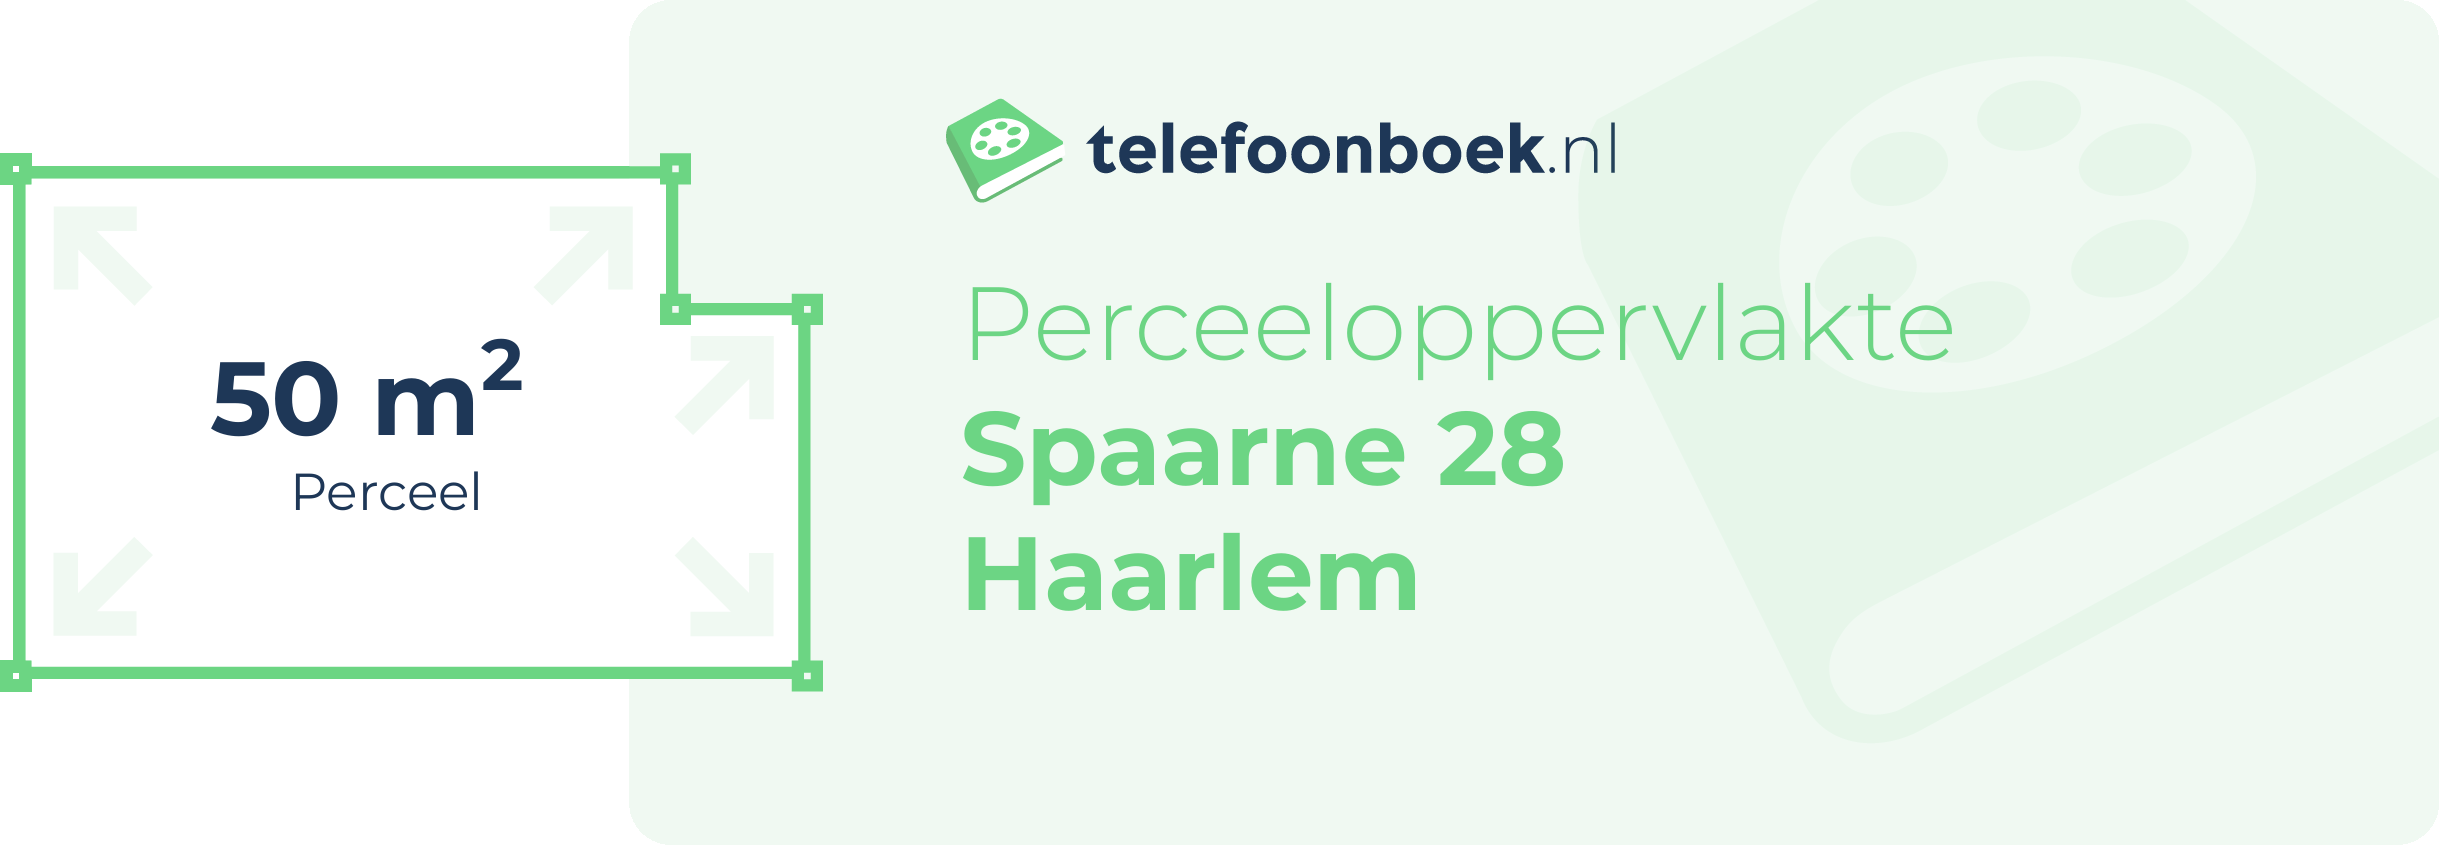 Perceeloppervlakte Spaarne 28 Haarlem